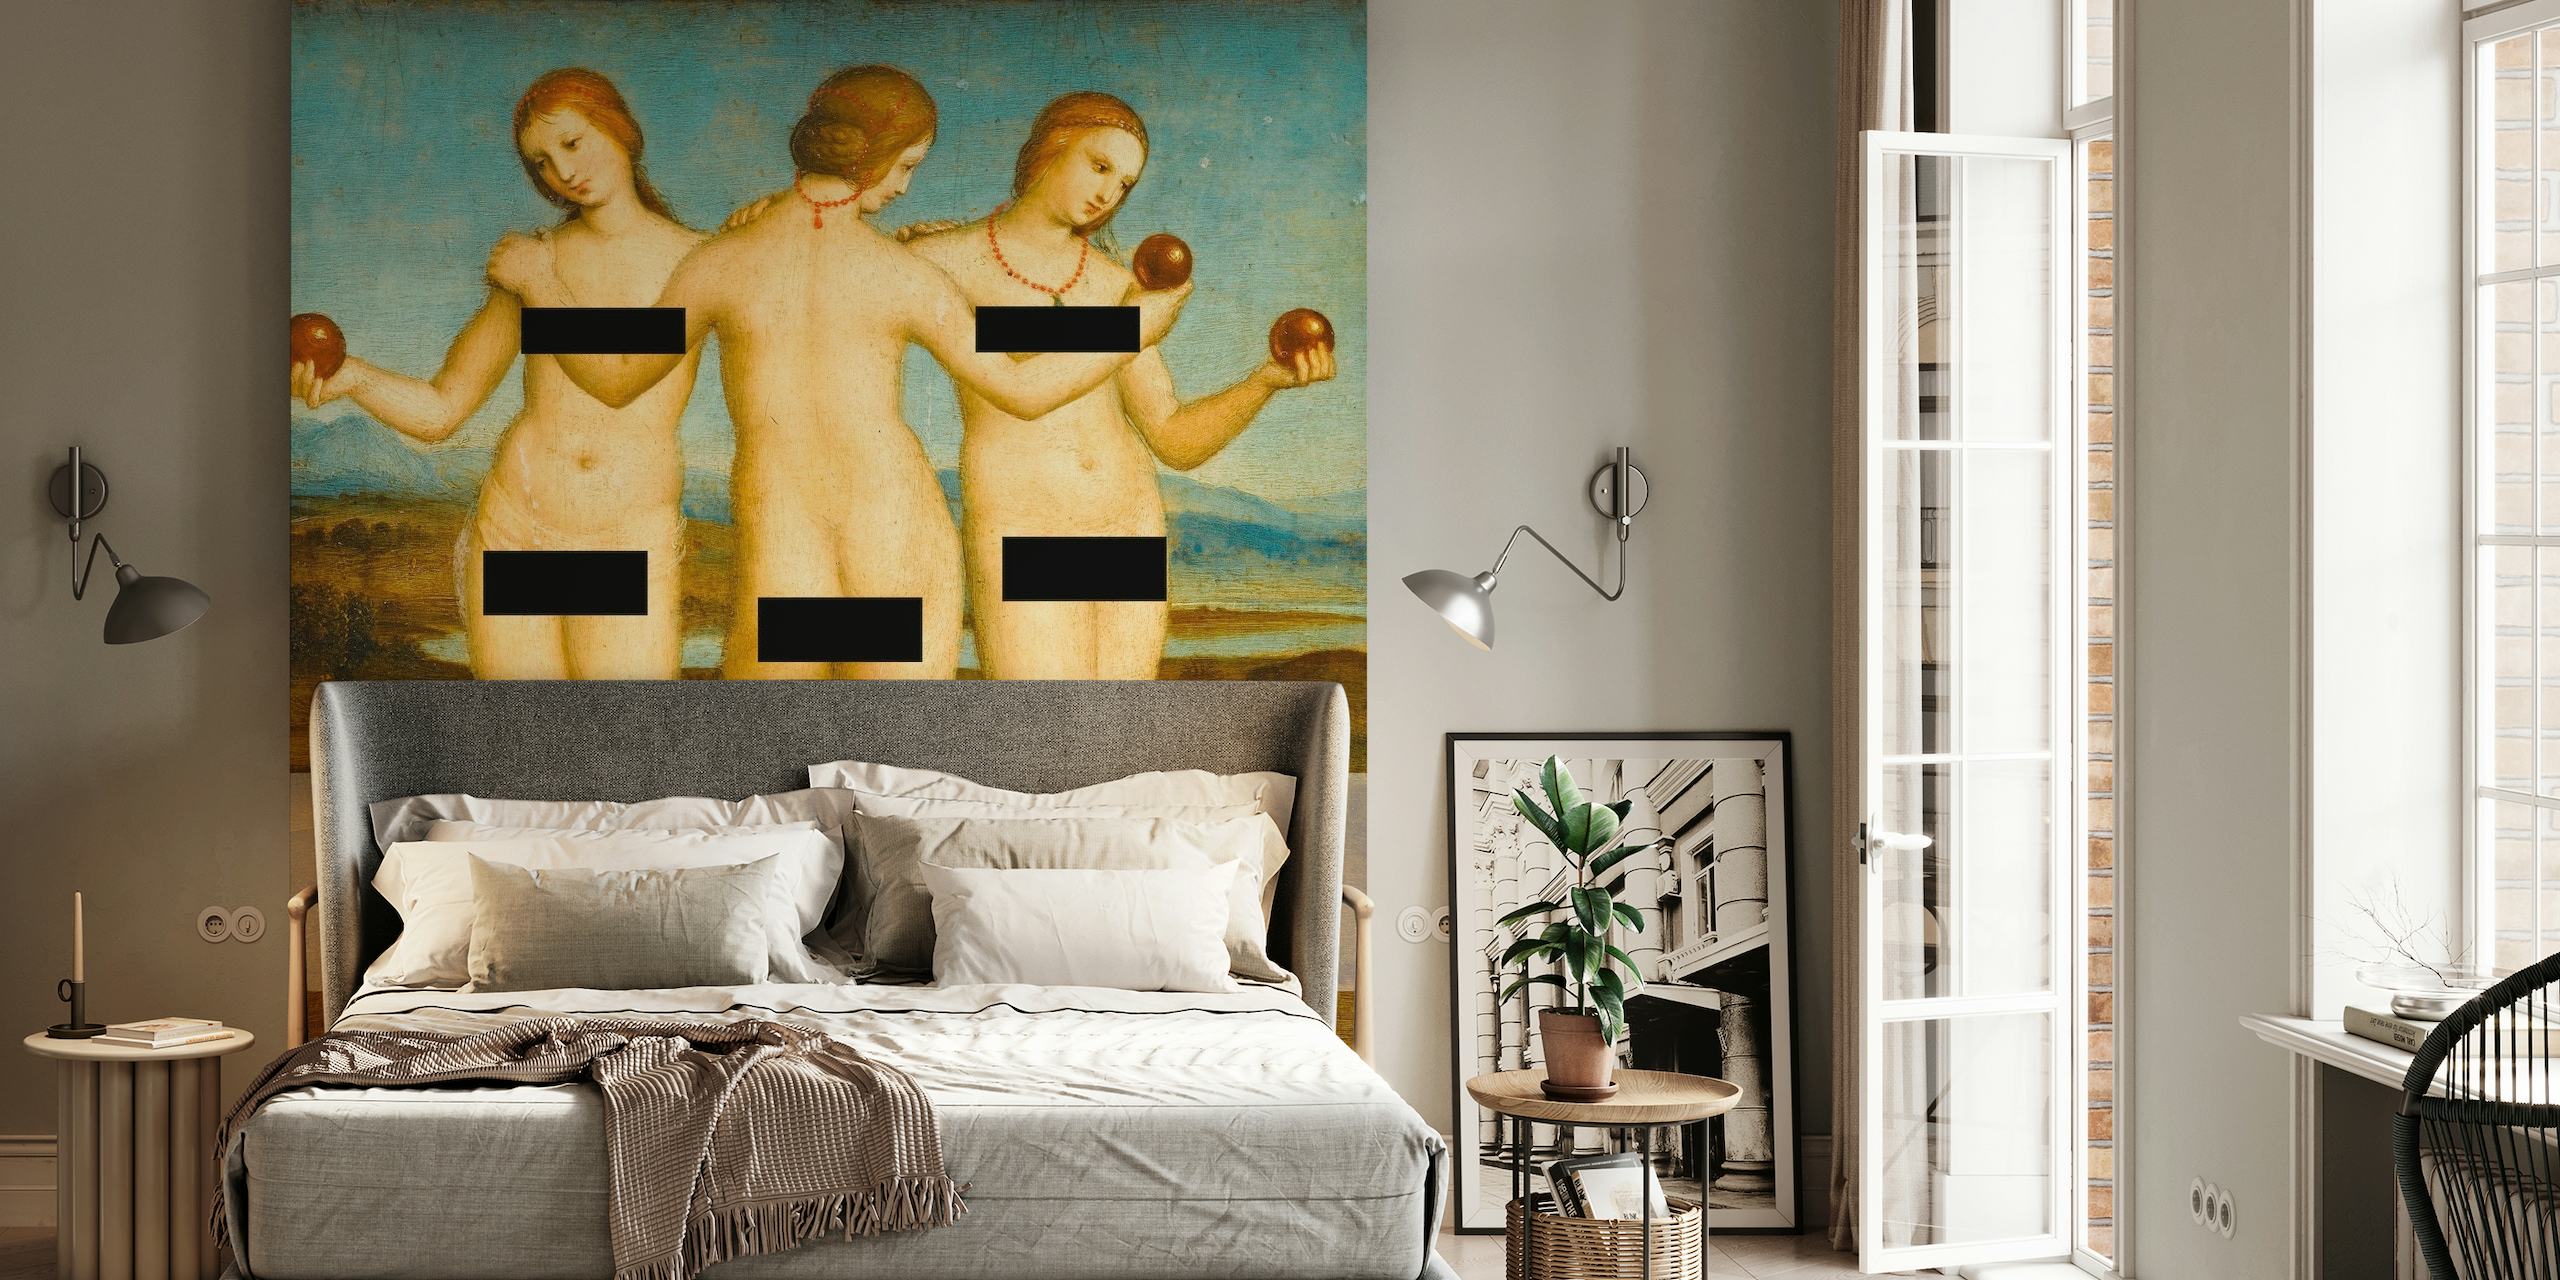 Censureret billede af de mytologiske Three Graces i et klassisk vægmaleri til boligindretning